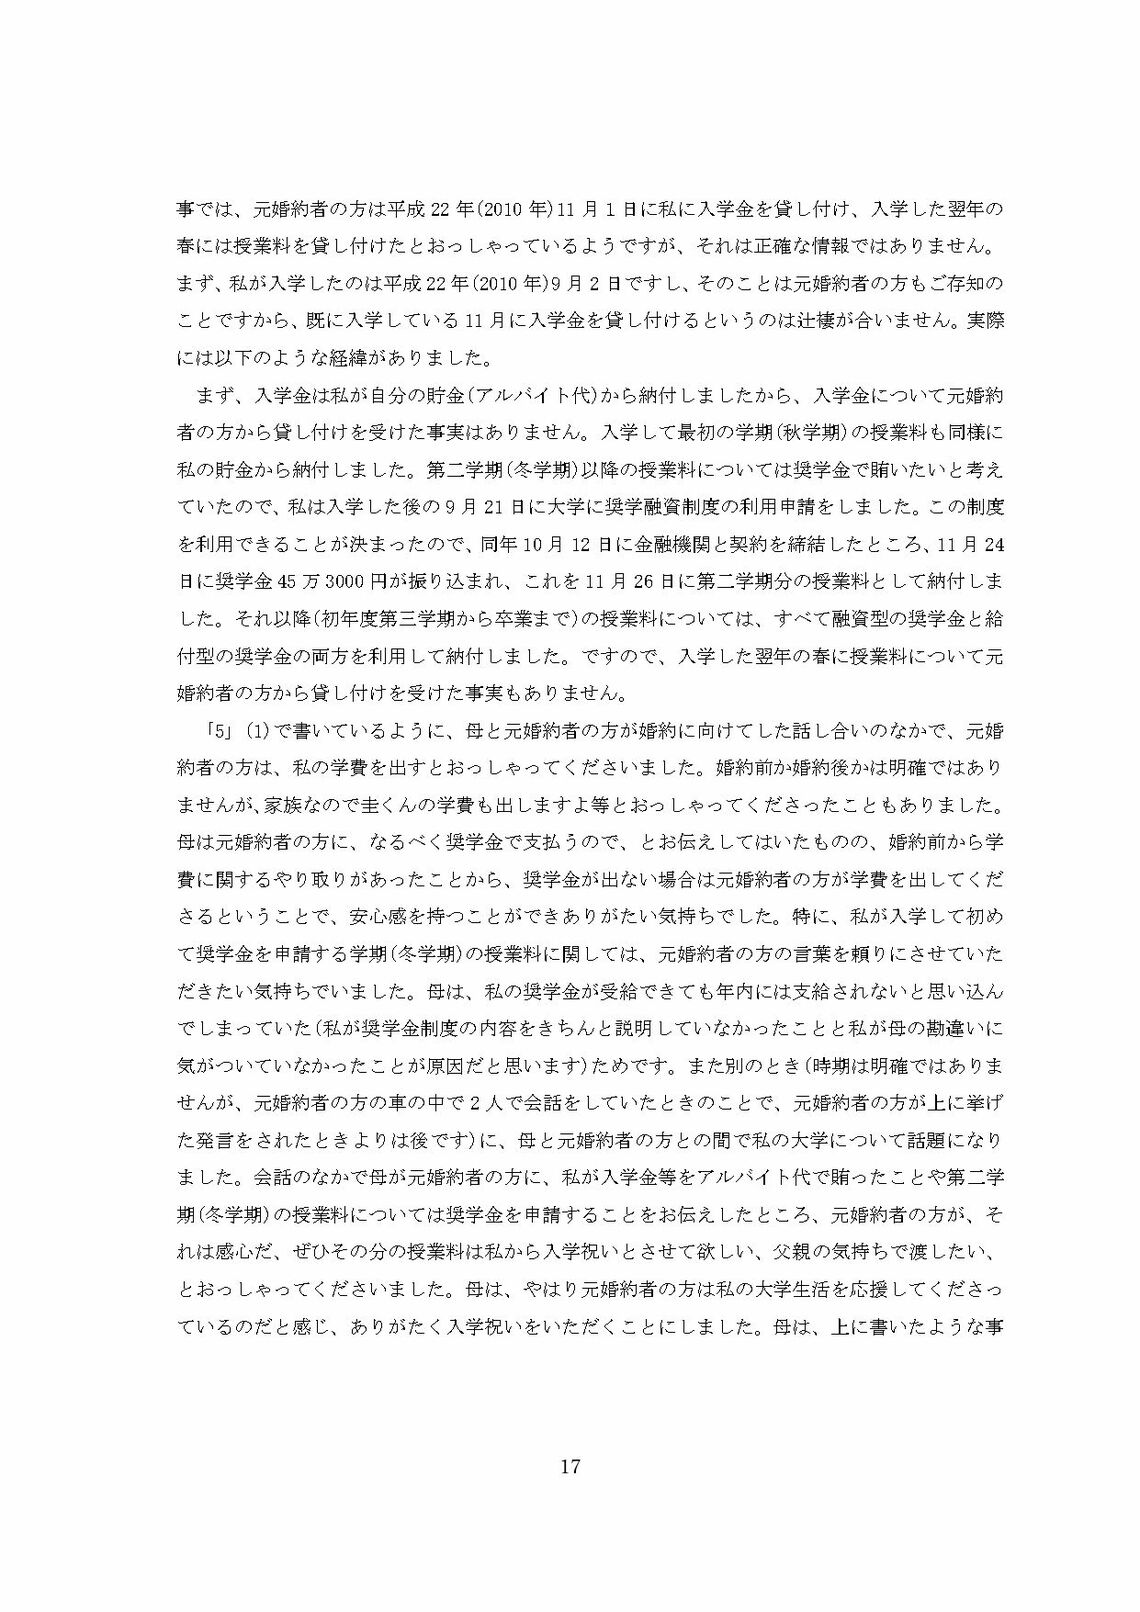 小室圭氏の代理人より届いた文書本文の脚注（17ページ目）（写真：週刊女性PRIME）